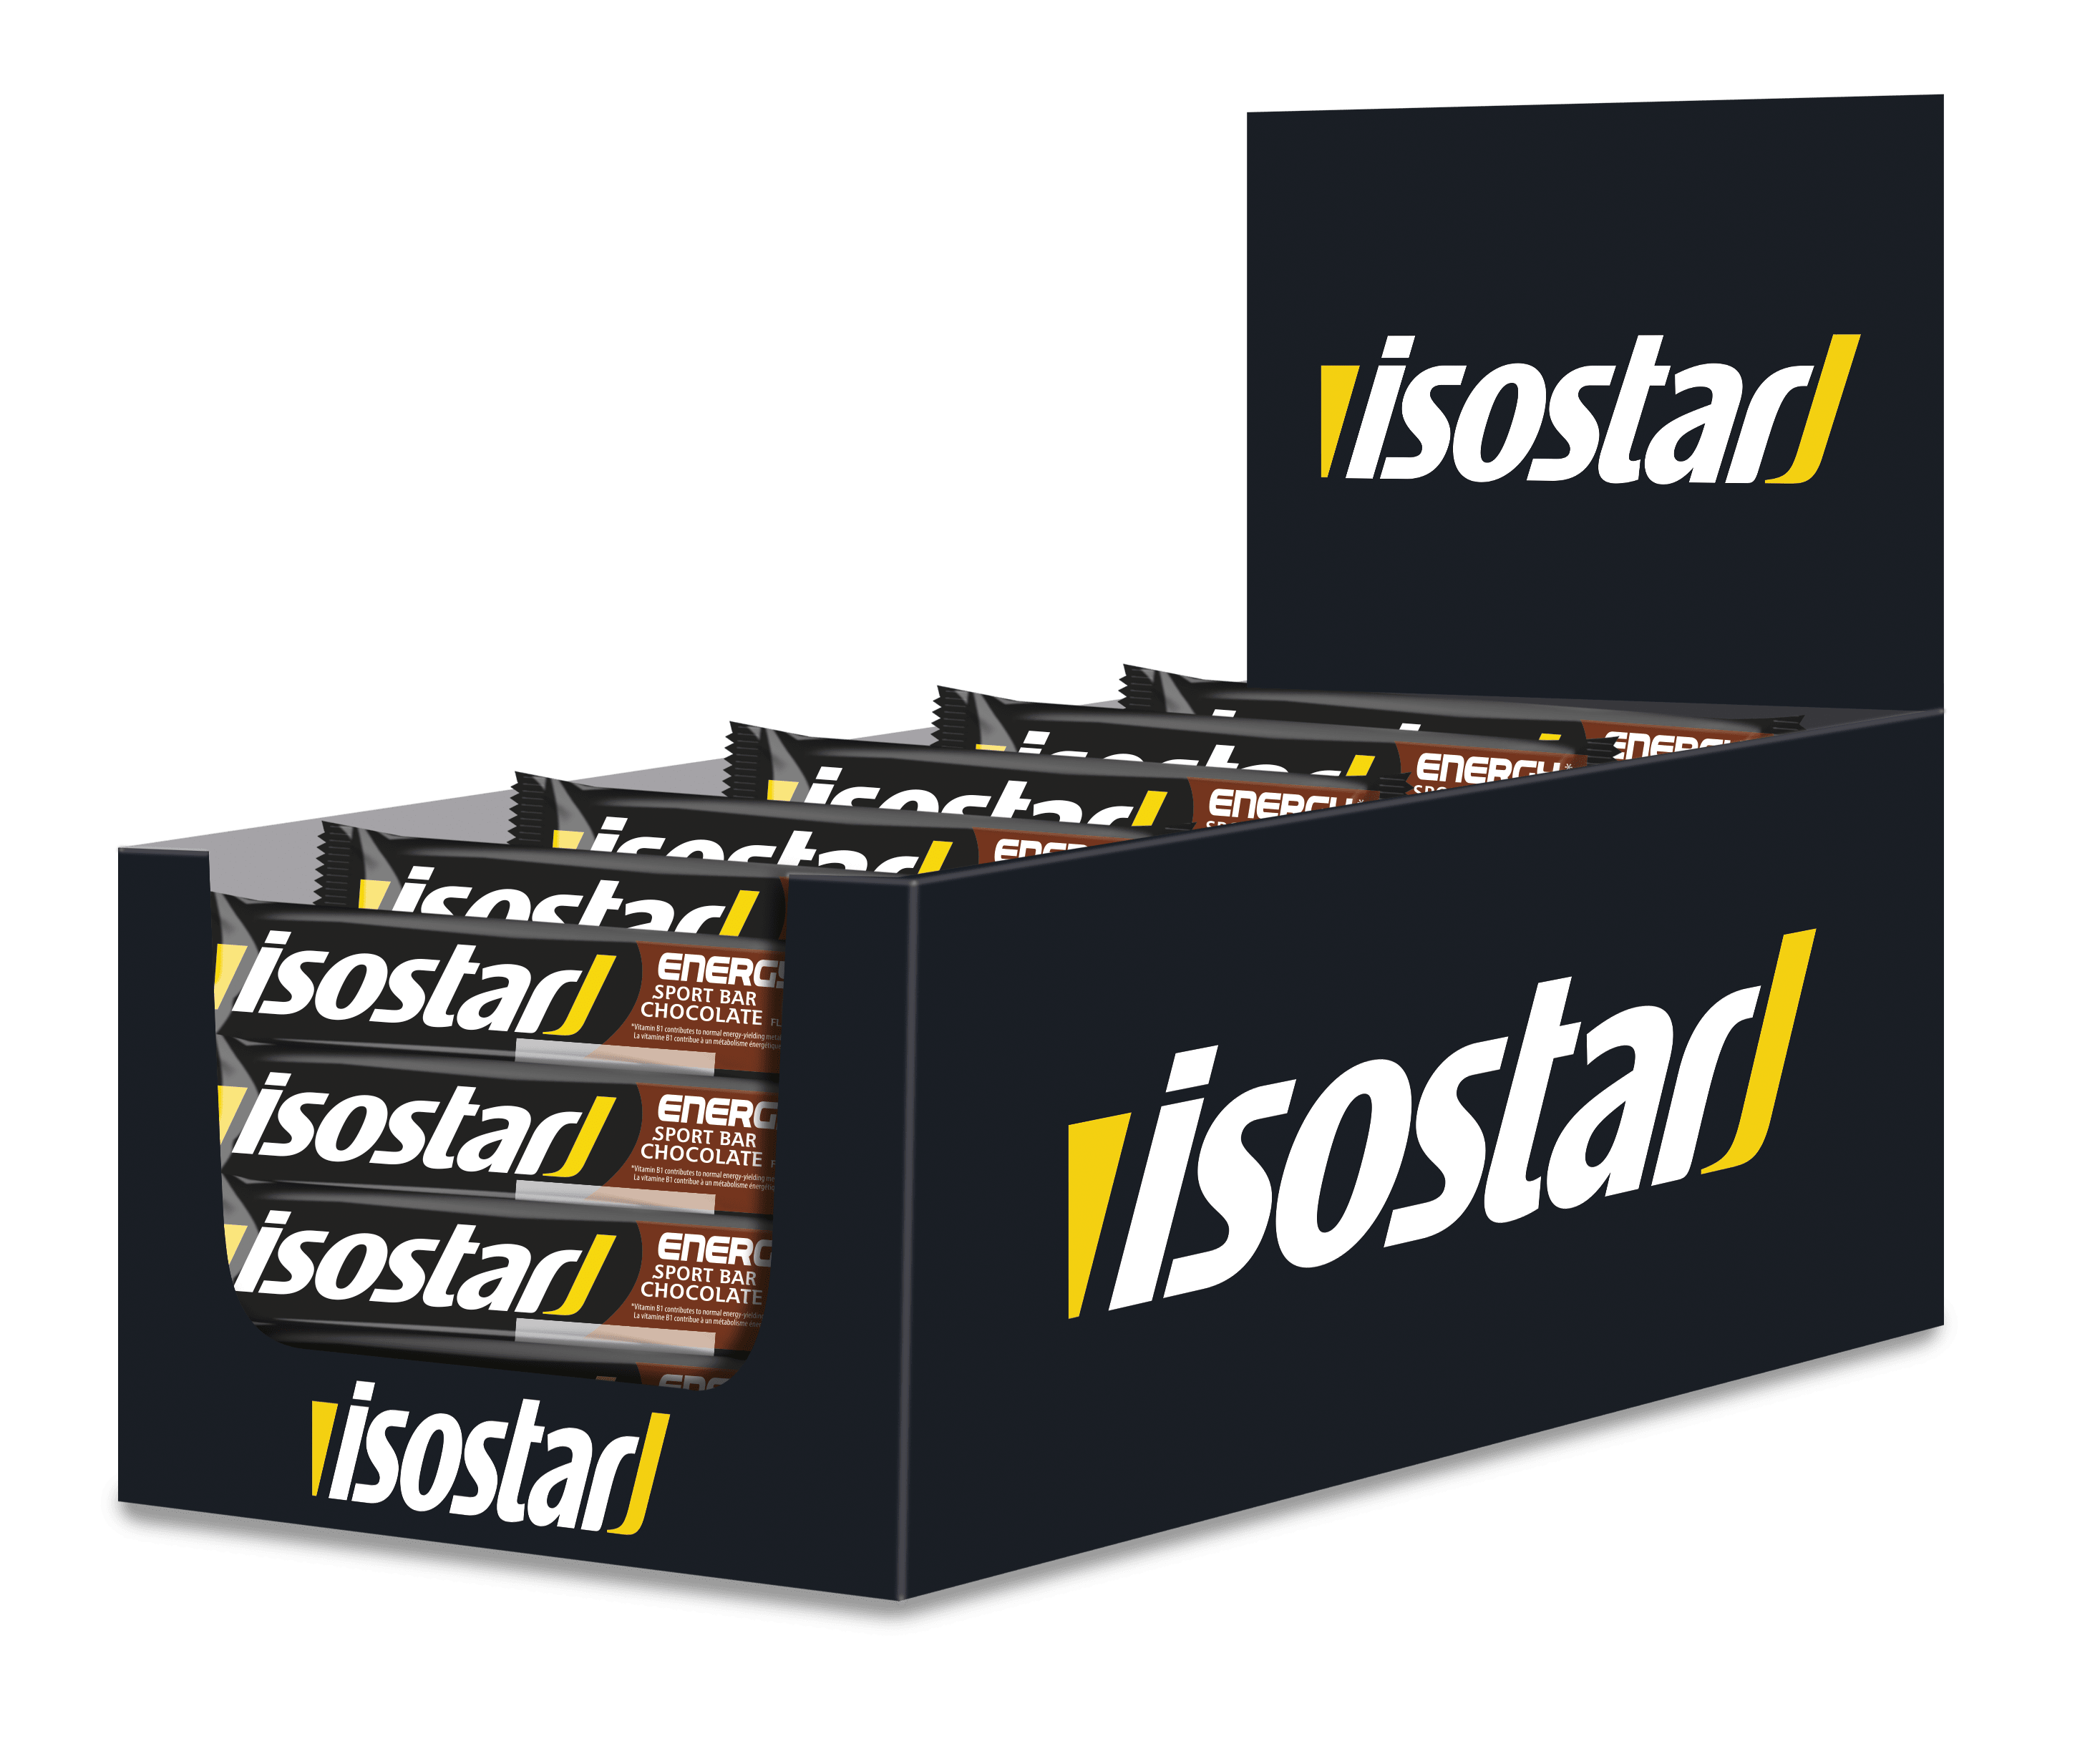 Veroveren referentie Arbitrage Energy Bar (30x35g) van Isostar kopen | Bodylab Shop